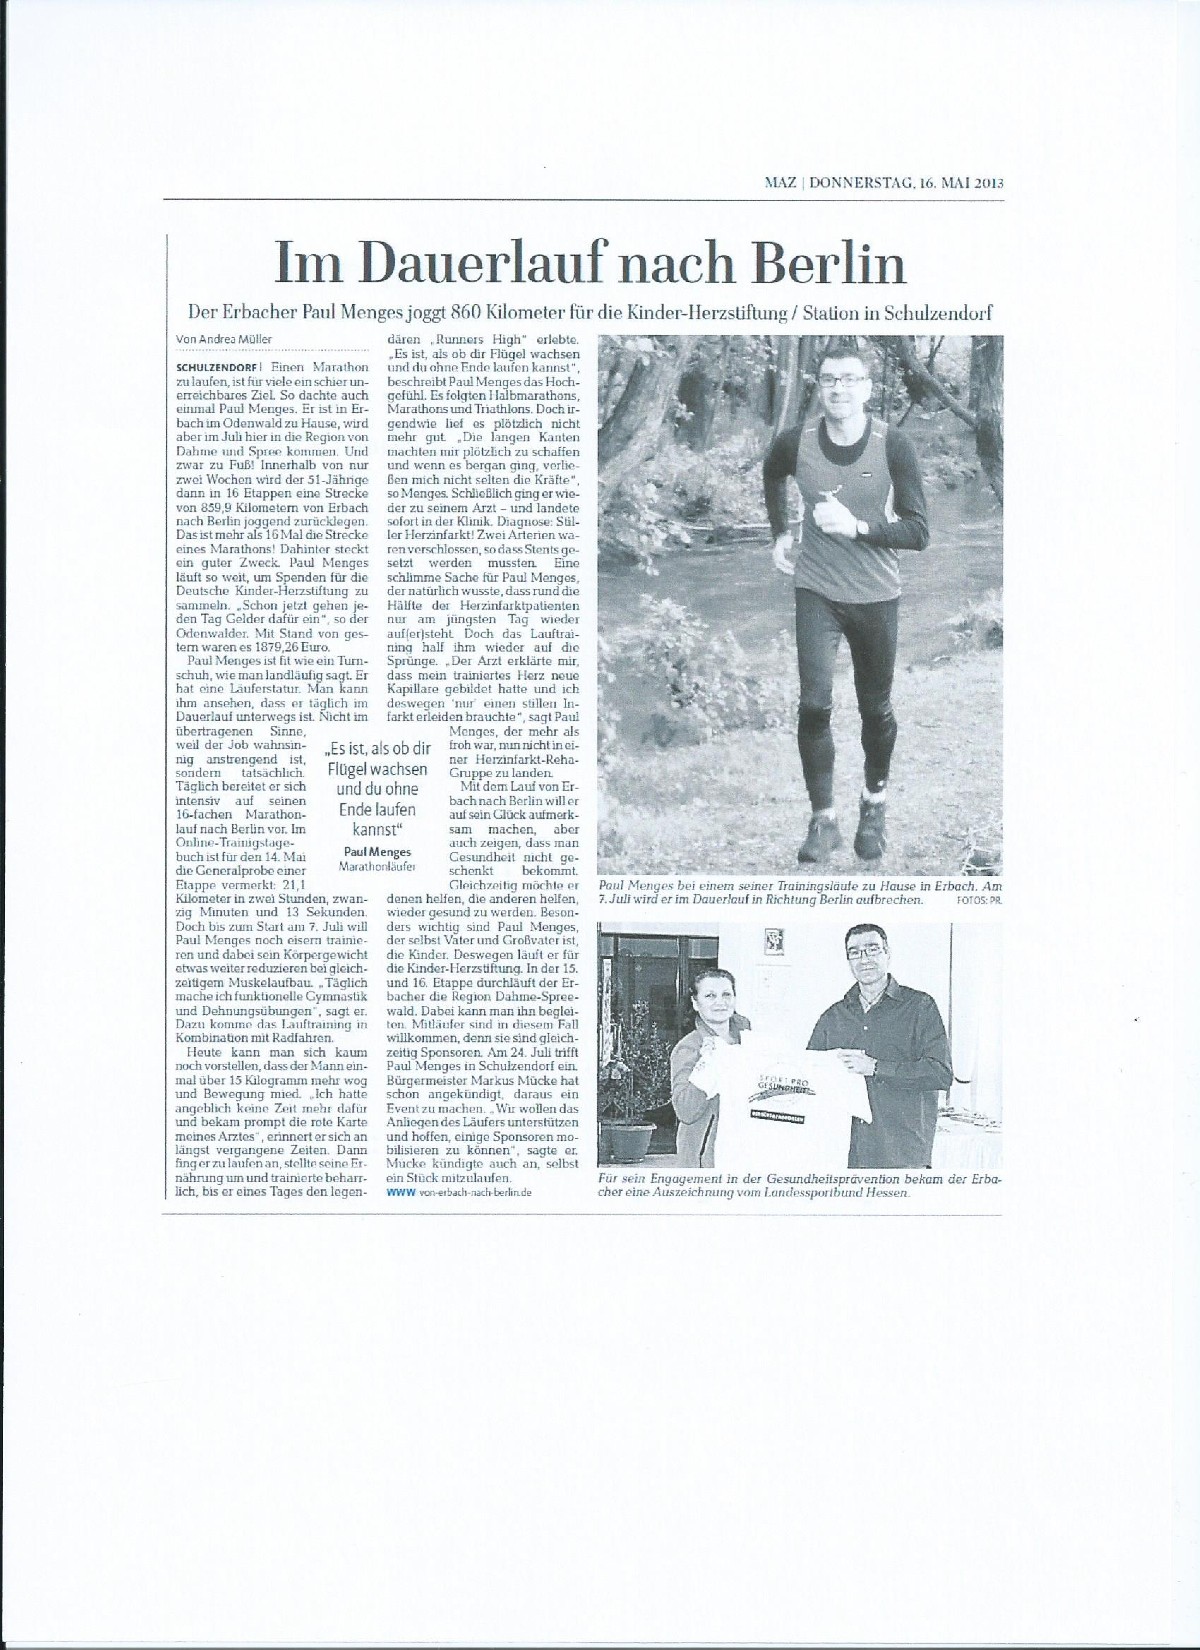 Märkische Allgemeine Zeitung Mai 2013